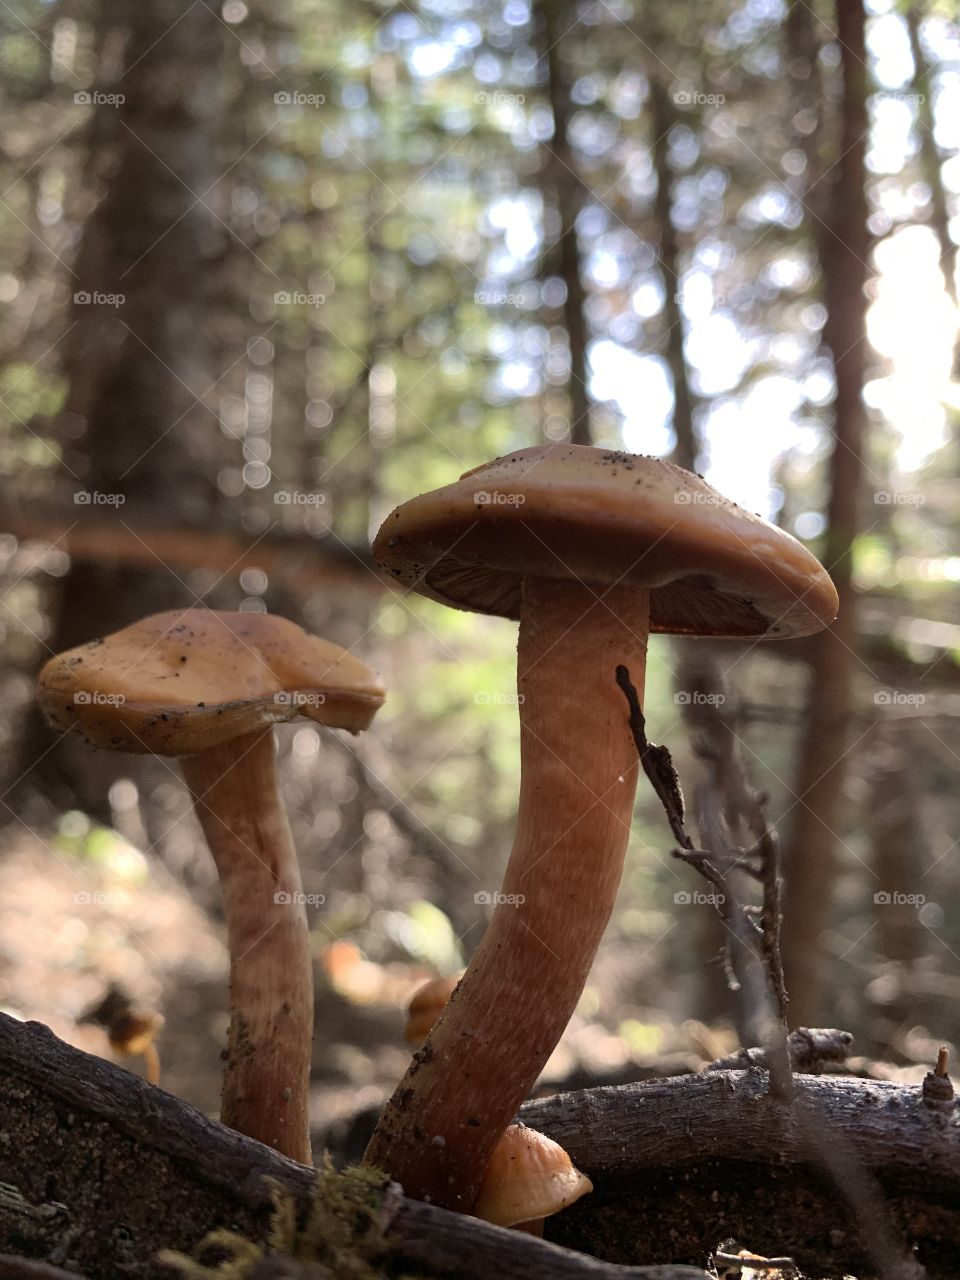 mushroom buddies